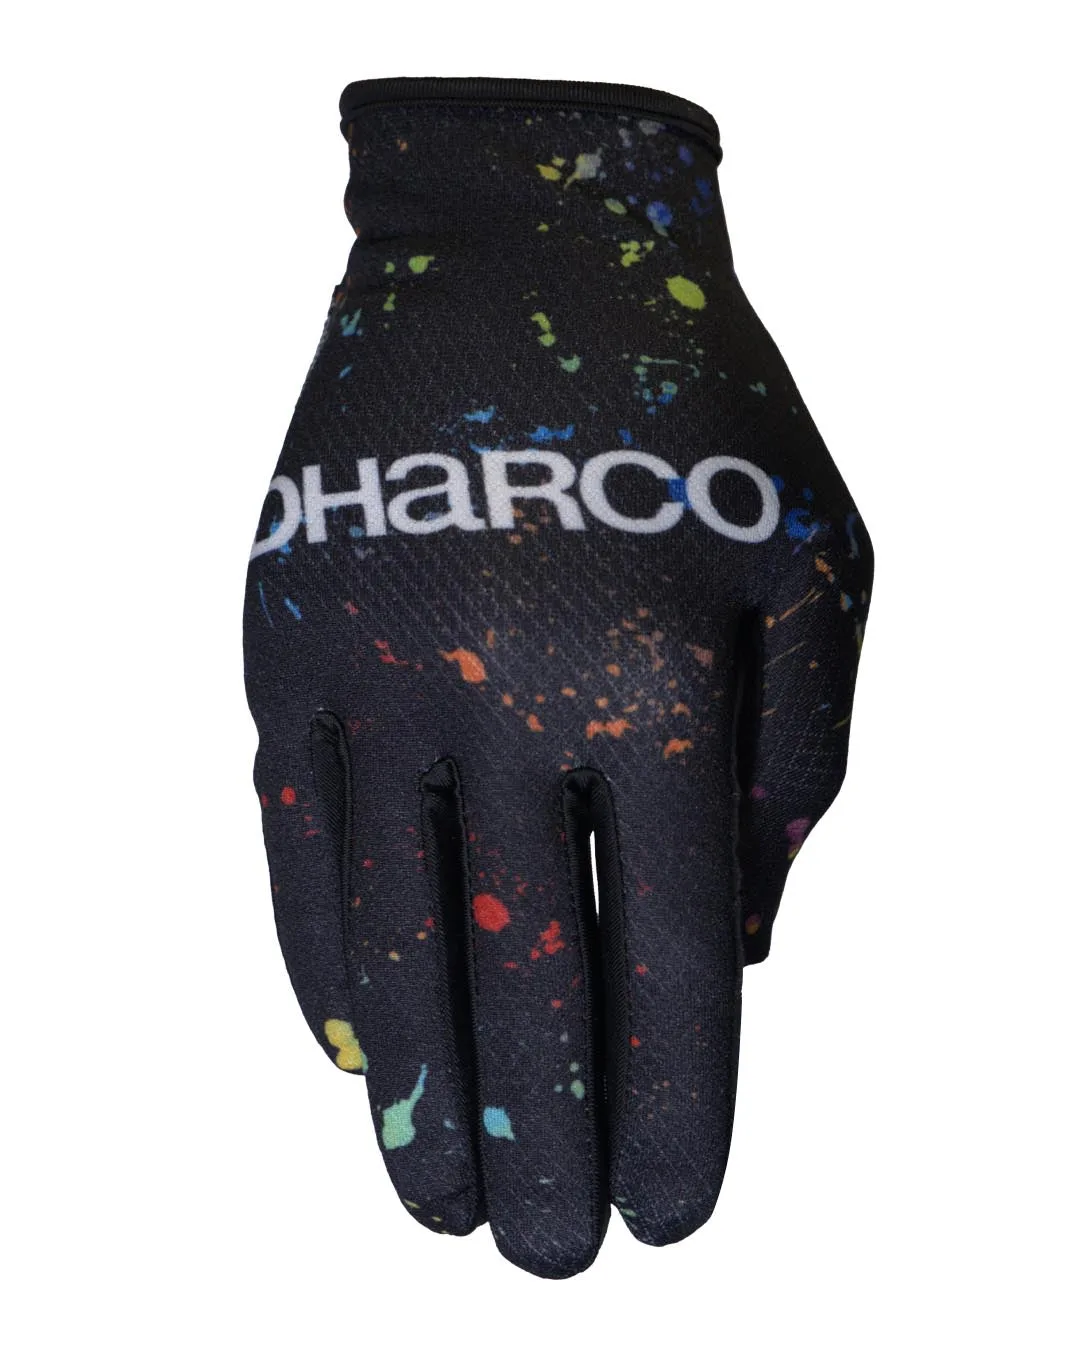 Dharco - Mens Race Glove - Supernova - Sort,Grøn,Blå,Rød,Orange L